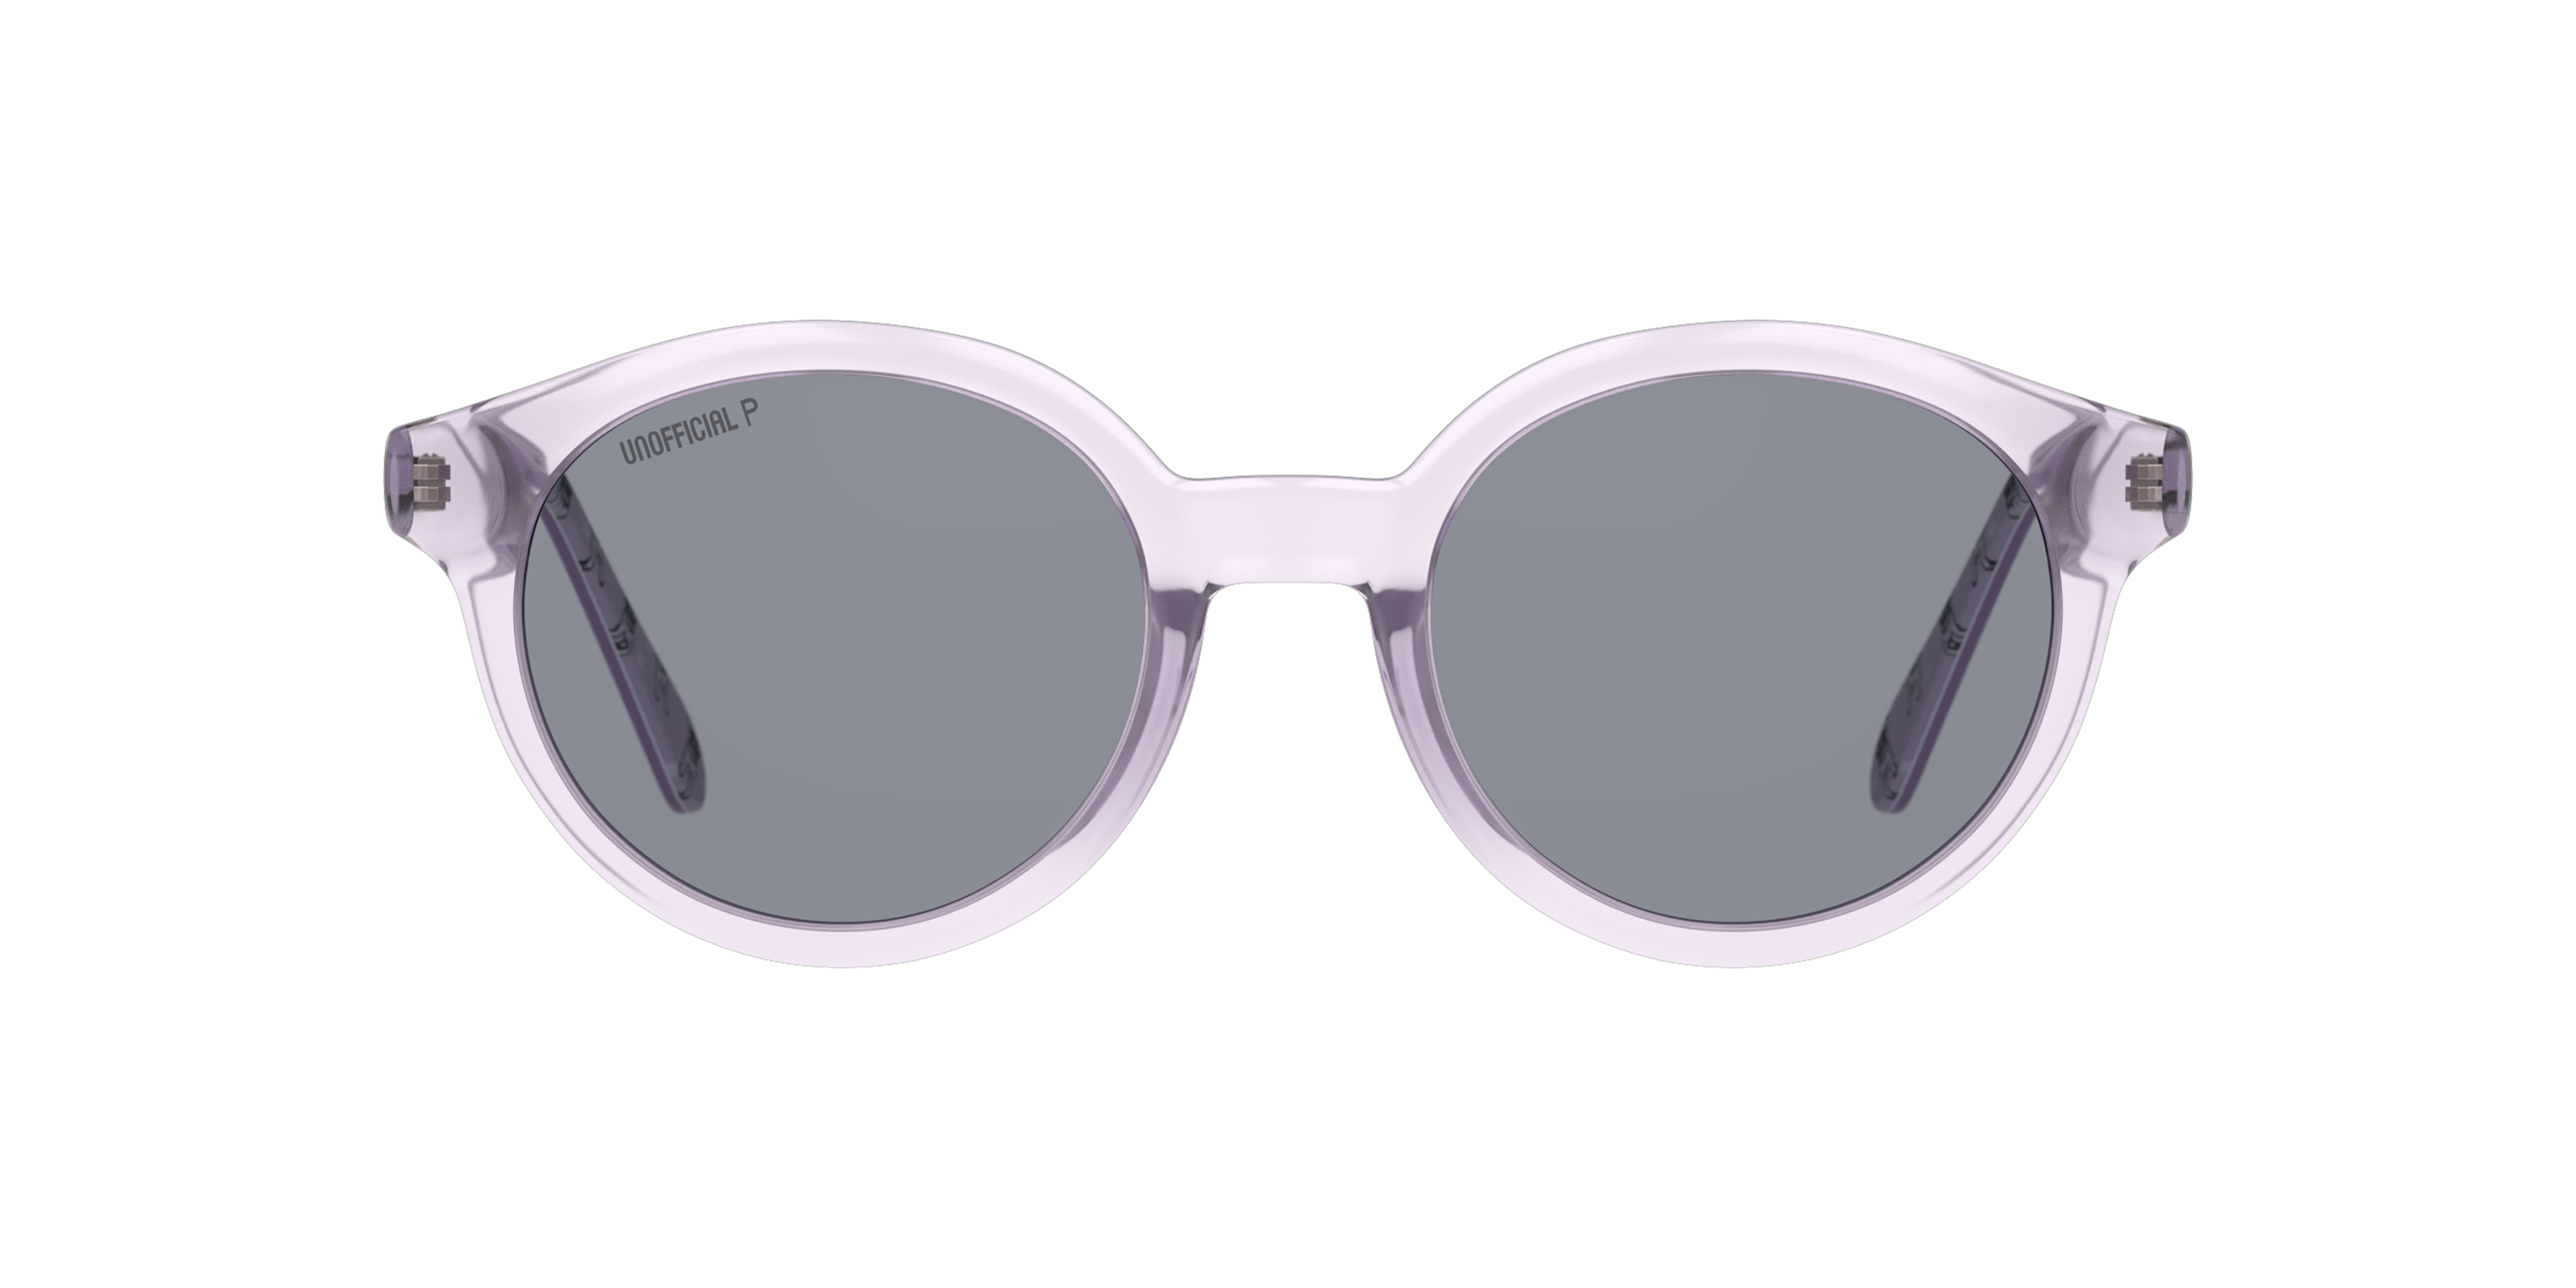 Front Unofficial UNSJ0002P (VVG0) Glasses Grey / Transparent, Purple